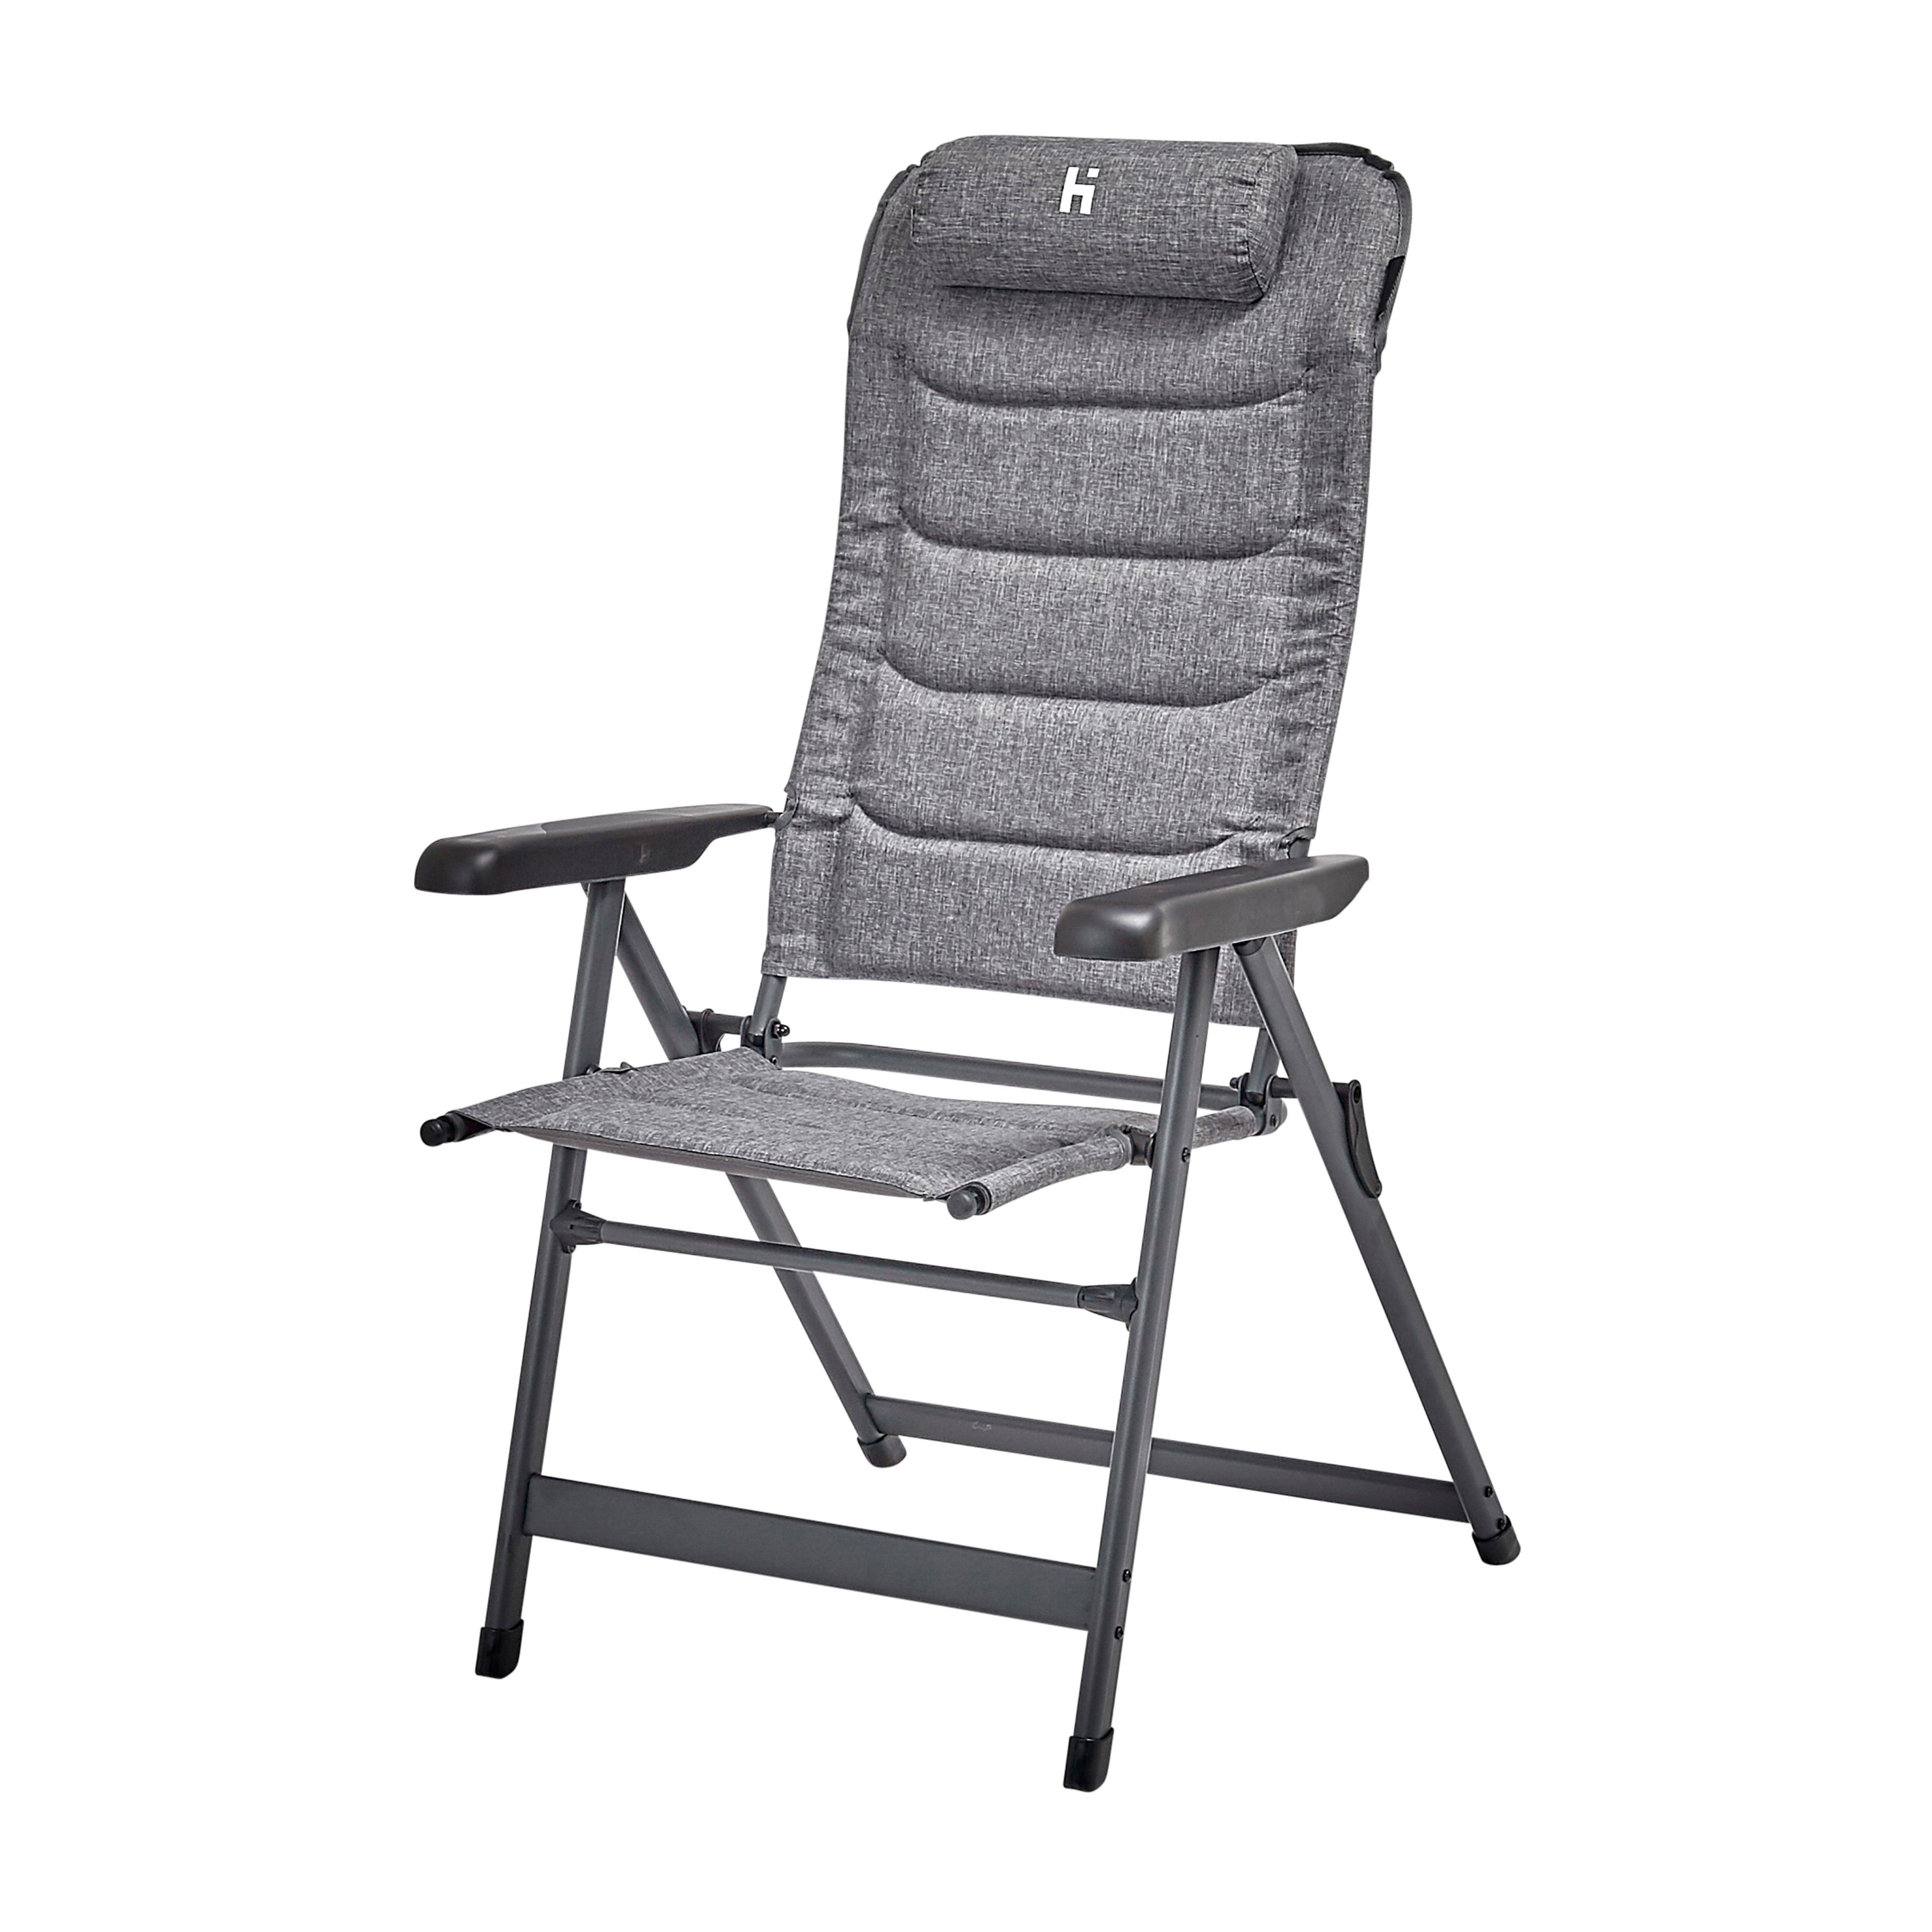 Hi-gear Turin Recliner Chair - Grey/gry  Grey/gry